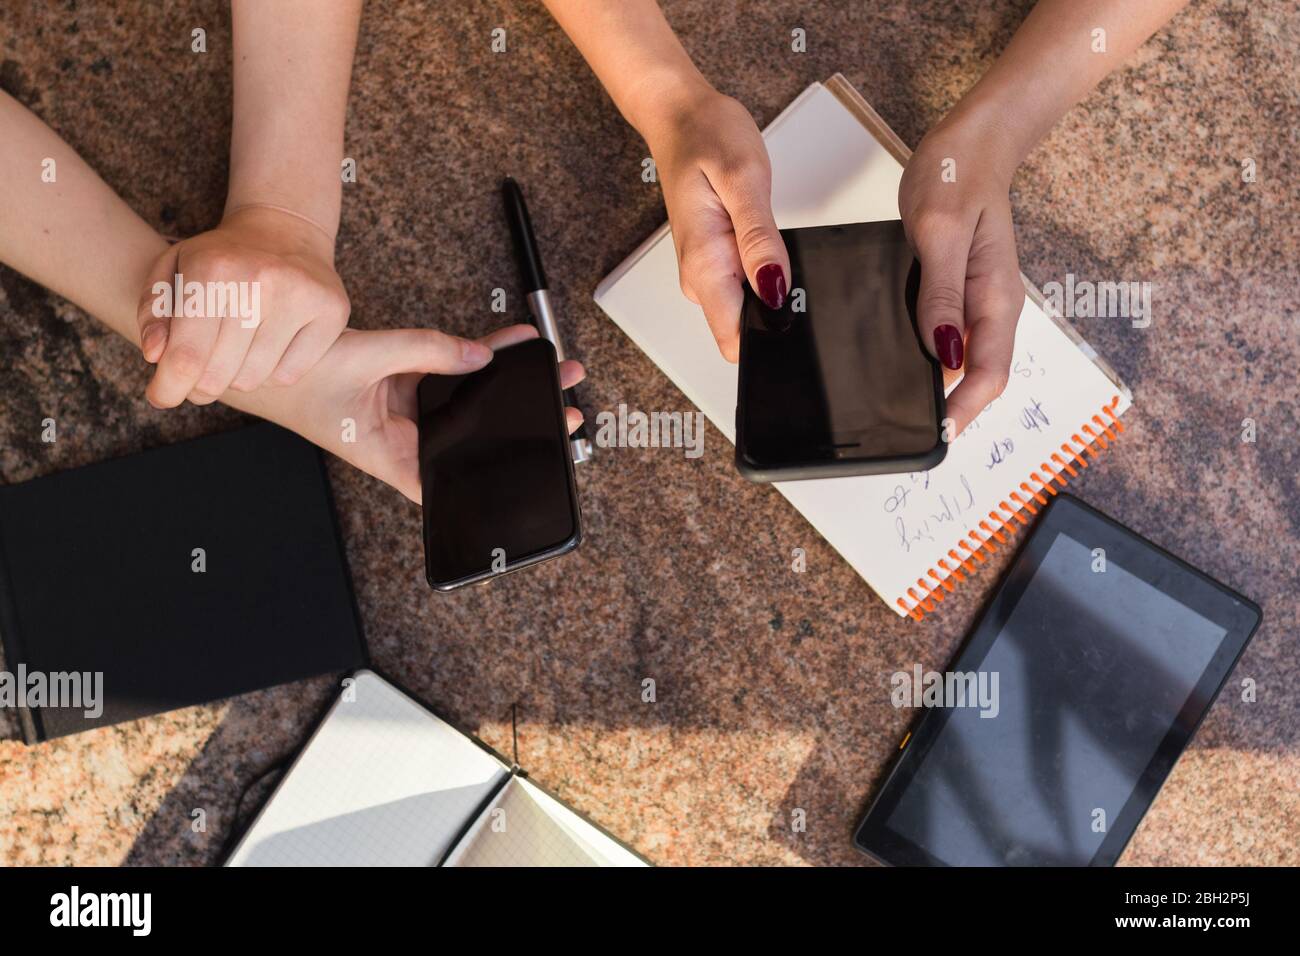 Una persona che taglia un pezzo di torta su un tavolo Foto Stock